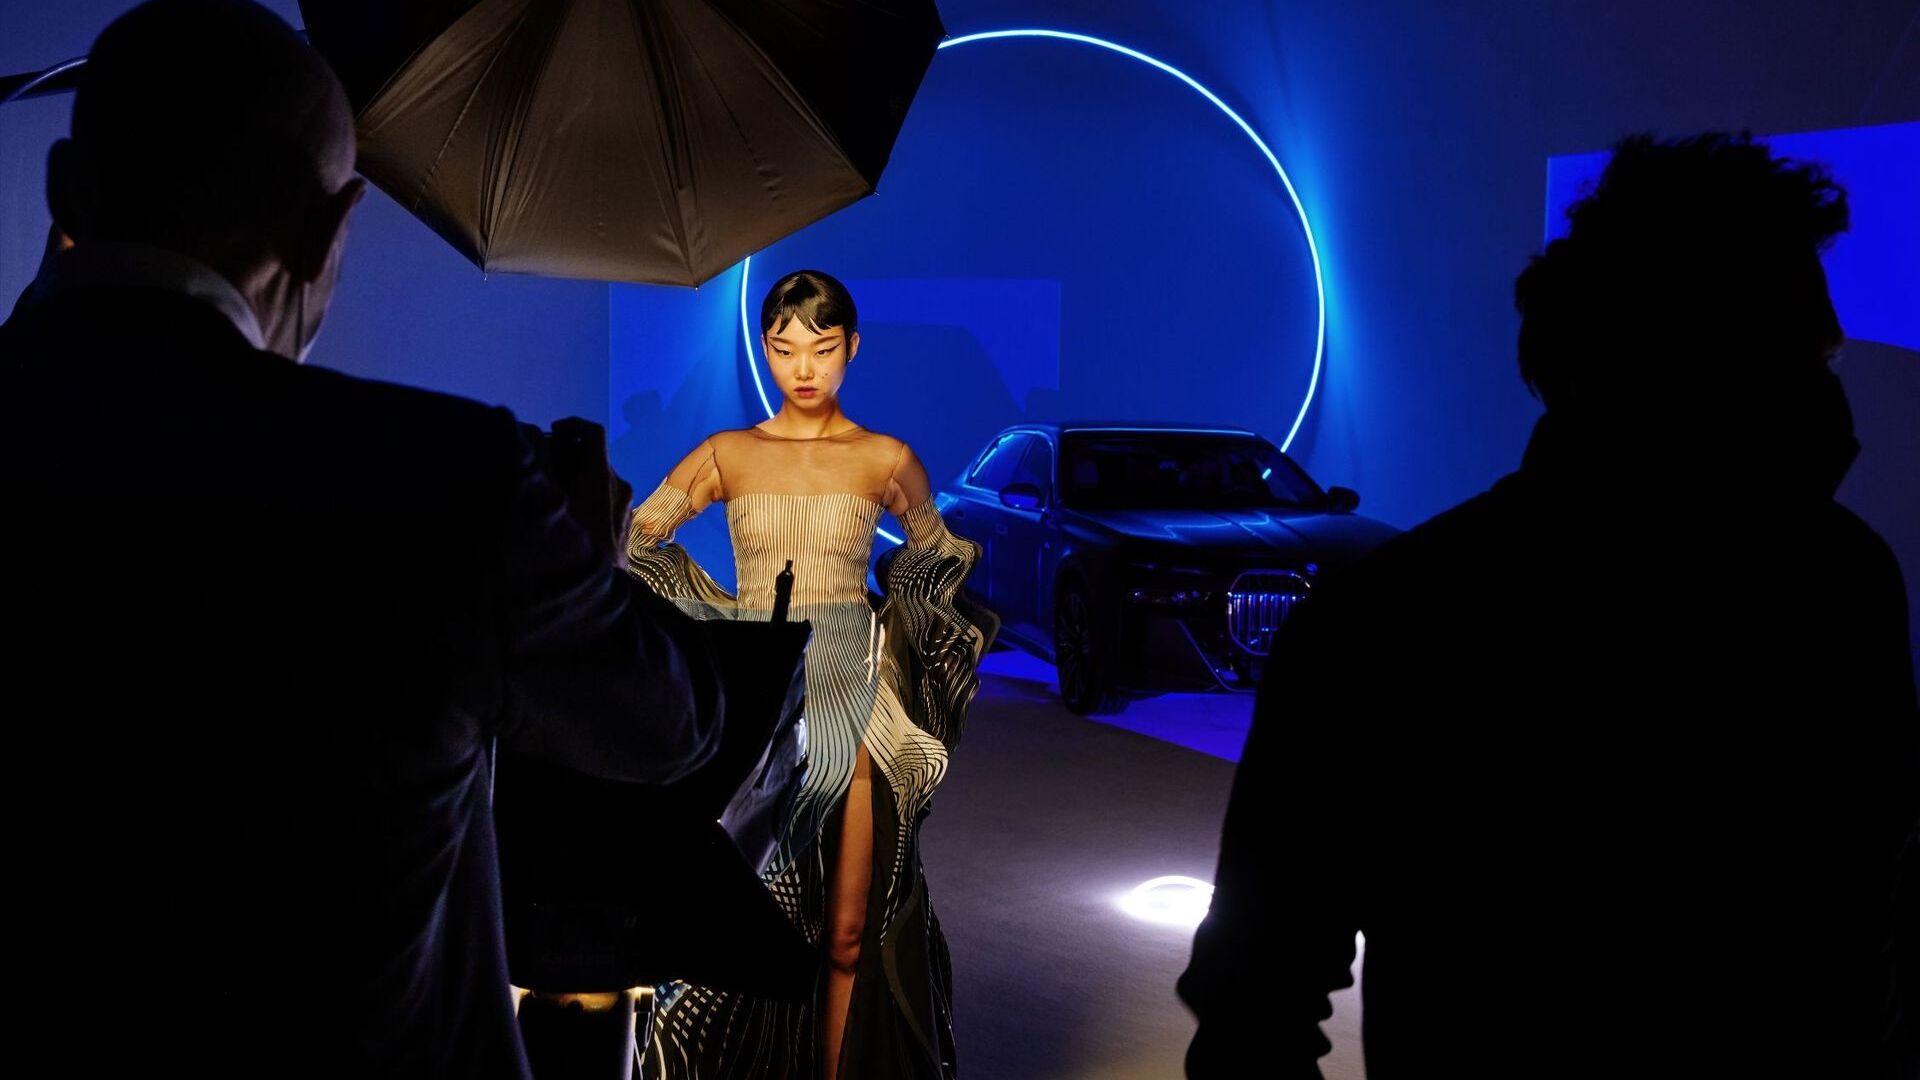 BMW i7 reinterpretirao je britanski modni fotograf Nick Knight prema kriterijima forwardizma